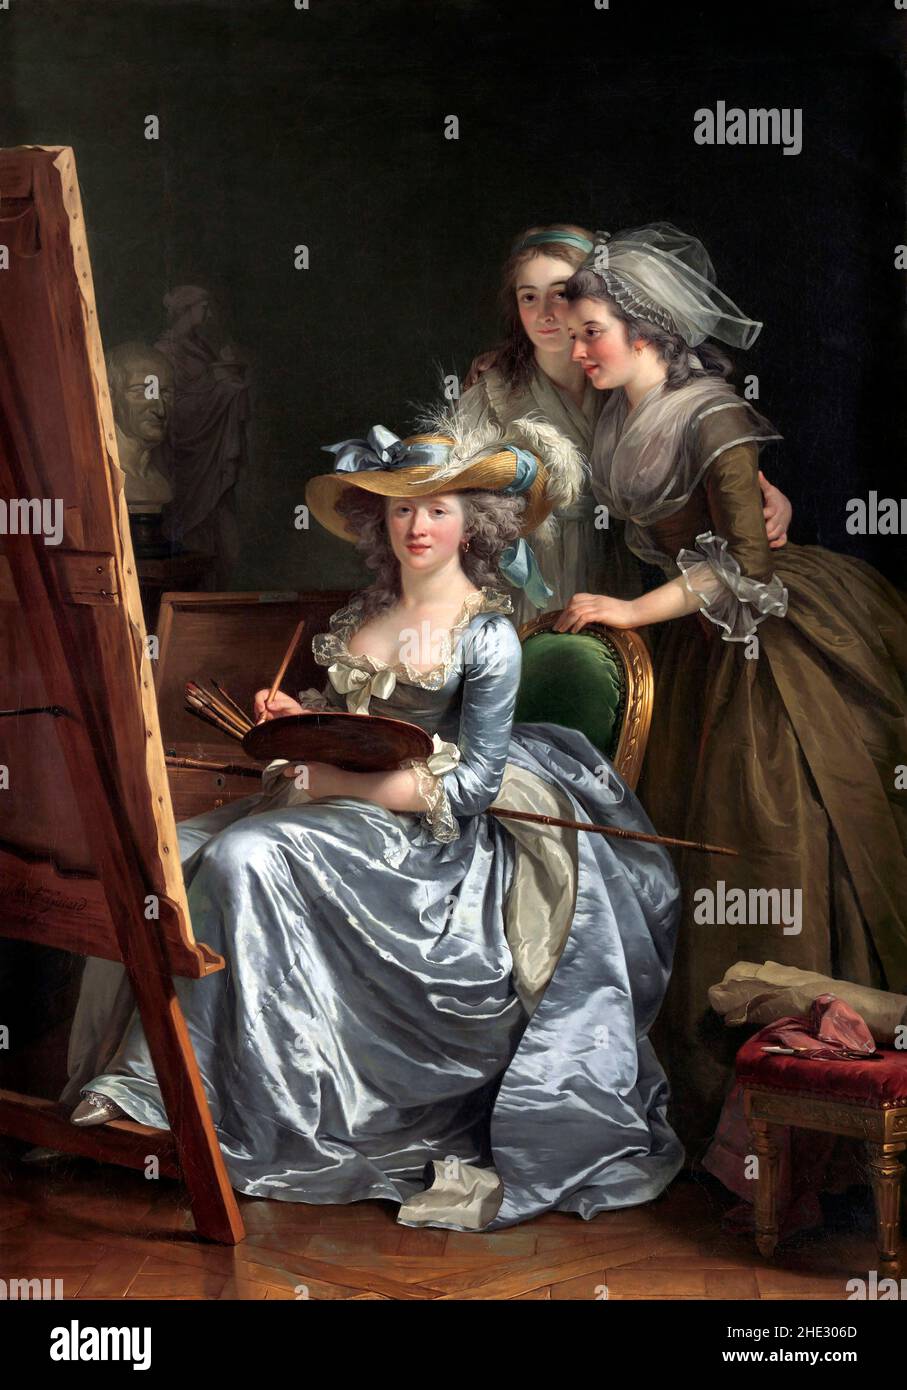 Autoritratto con due alunni, Marie Gabrielle Capet e Marie Marguerite Carreaux de Rosemond dell'artista francese, Adélaide Labille-Guiard (1749-1803), olio su tela, 1785 Foto Stock